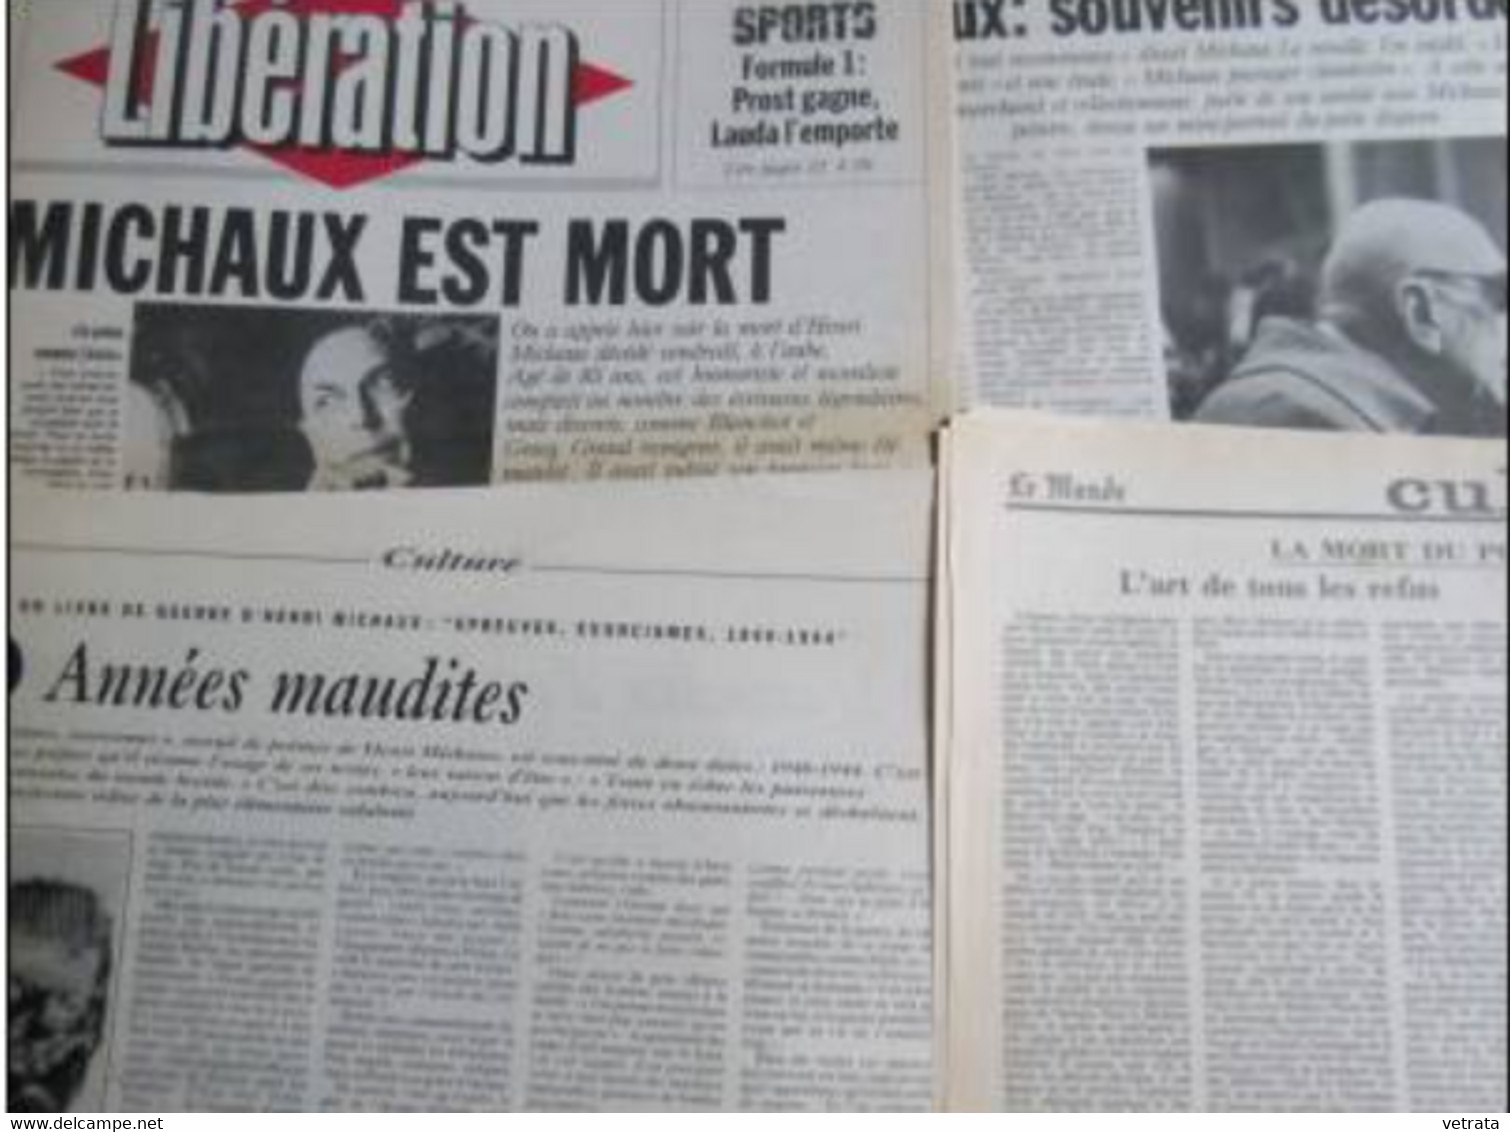 Henri Michaux : 2 N° Du Magazine Littéraire - Dossier Composé De 8 Coupures De Presse  & 1 Suppl. Libération Livres - Kranten Voor 1800